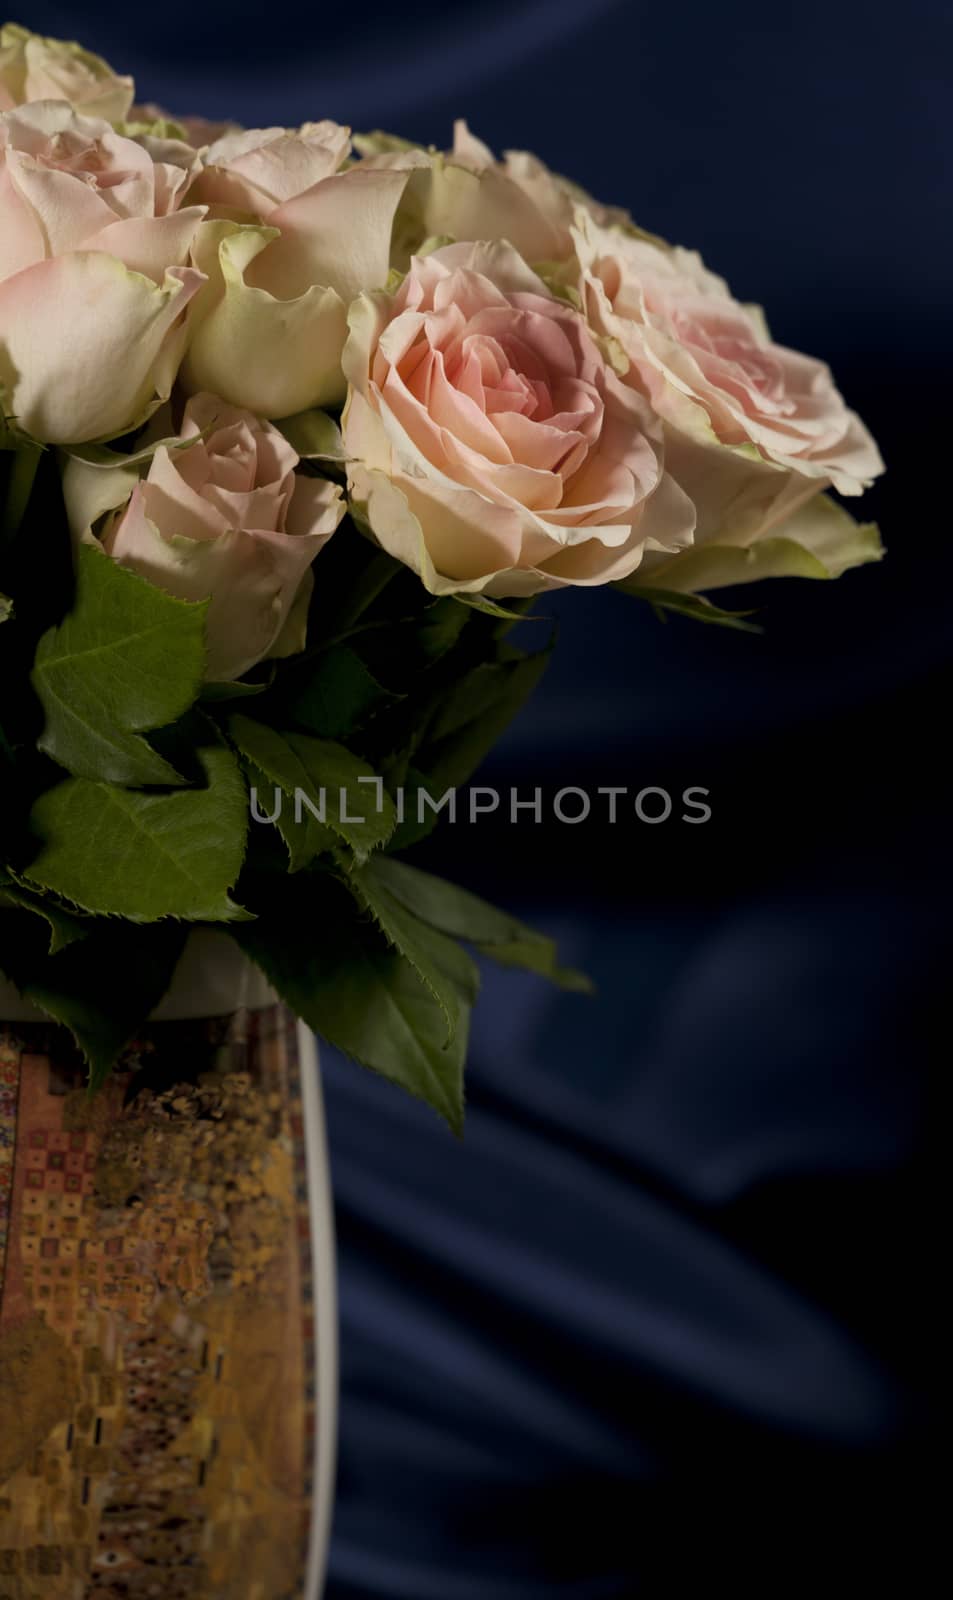 Flowers roses beautiful bouquet  in vase interior